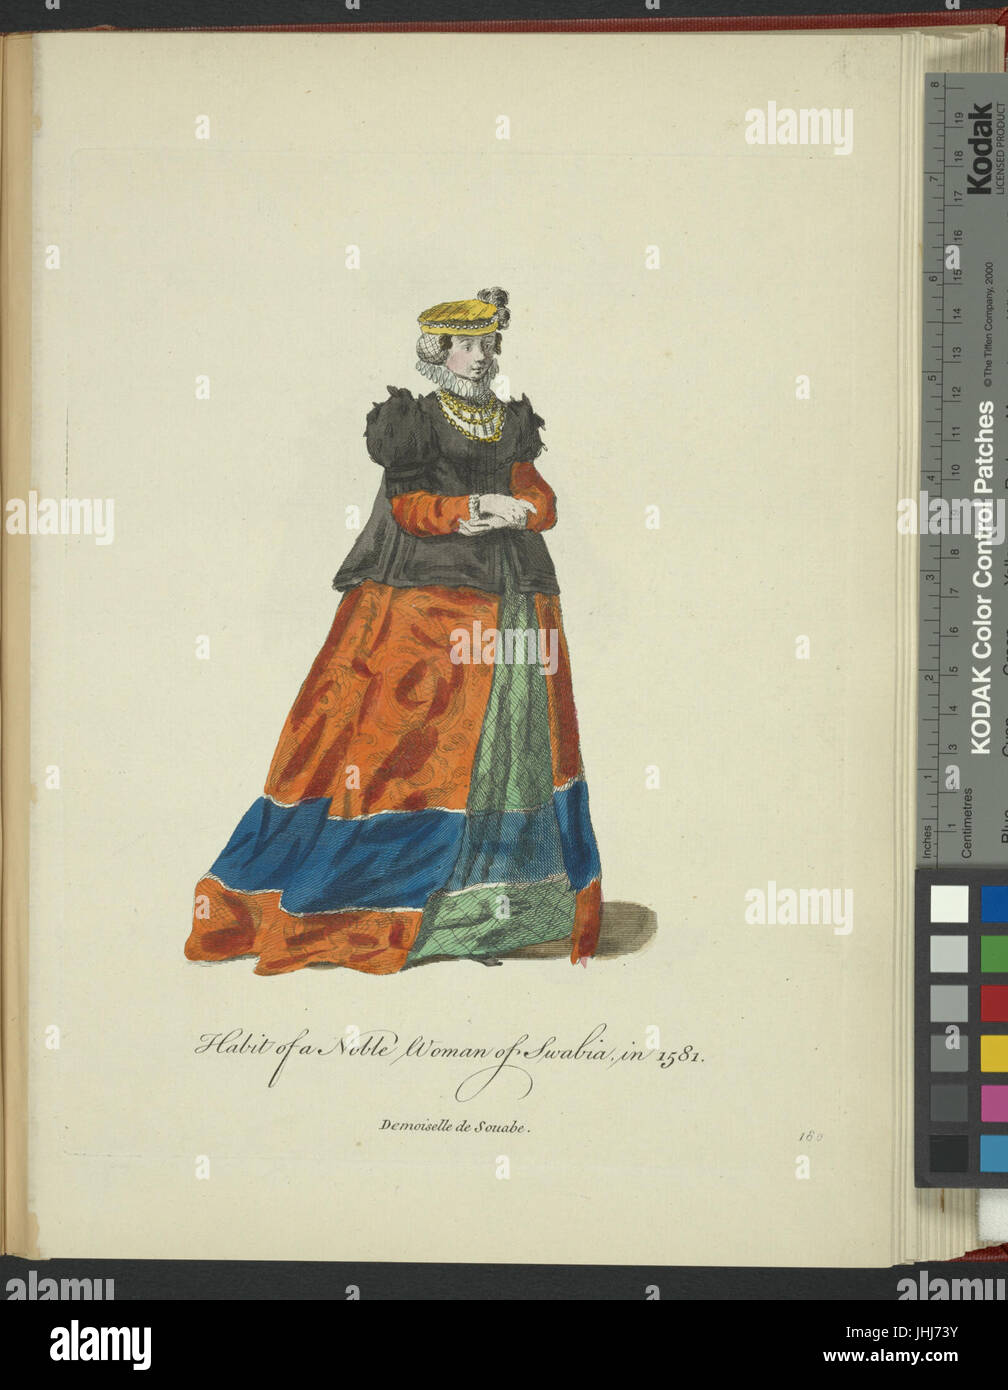 Habitude d'une femme noble de Souabe en 1581. Demoiselle de Souable (NYPL)14140320-1638191 b Banque D'Images